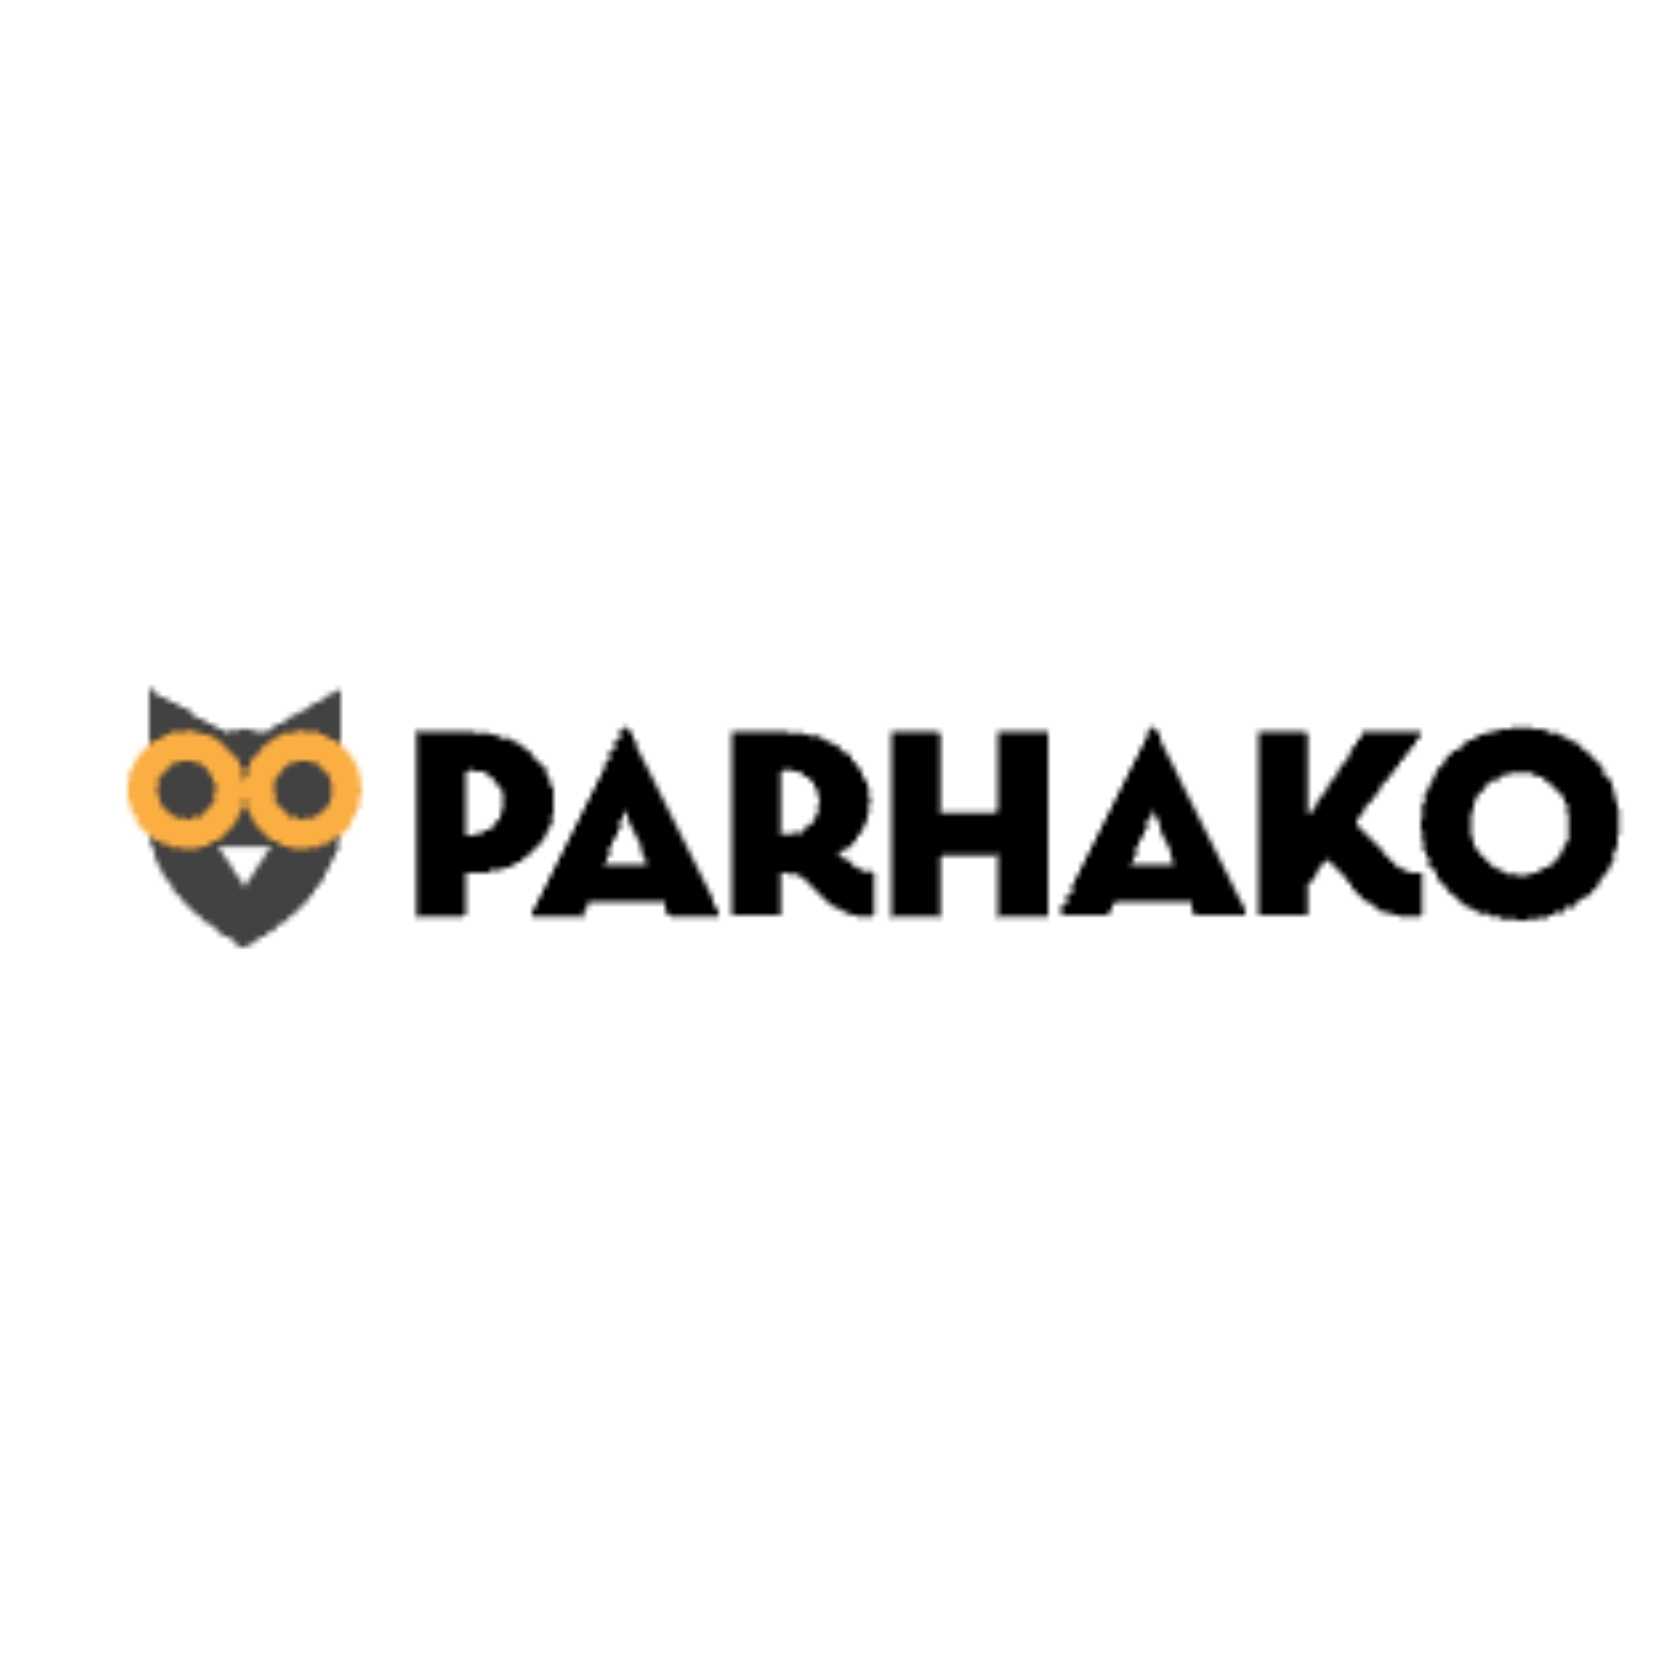 Parhako